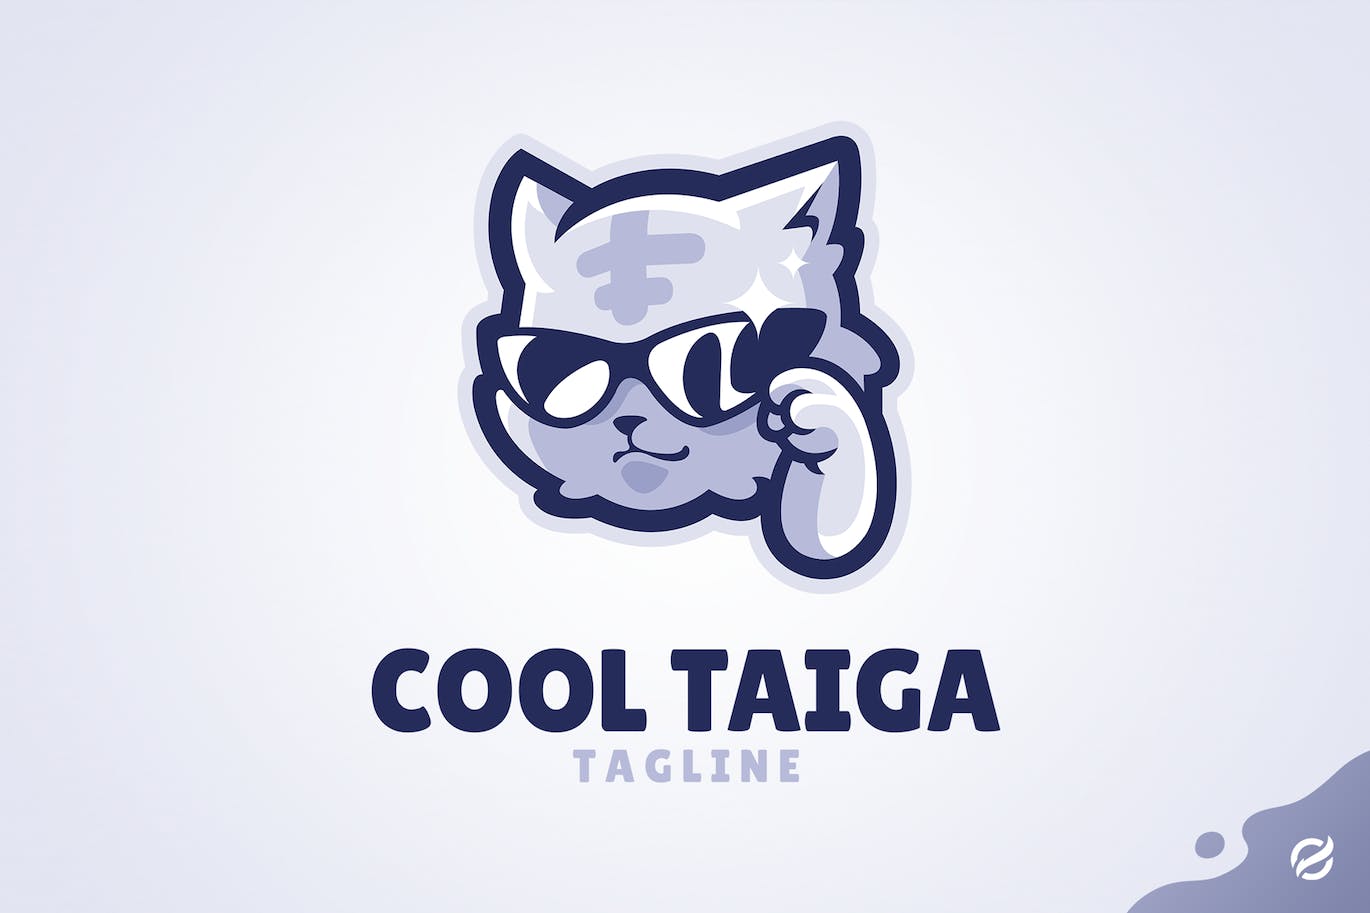 墨镜老虎Logo插画模板 Cool Taiga 图片素材 第1张